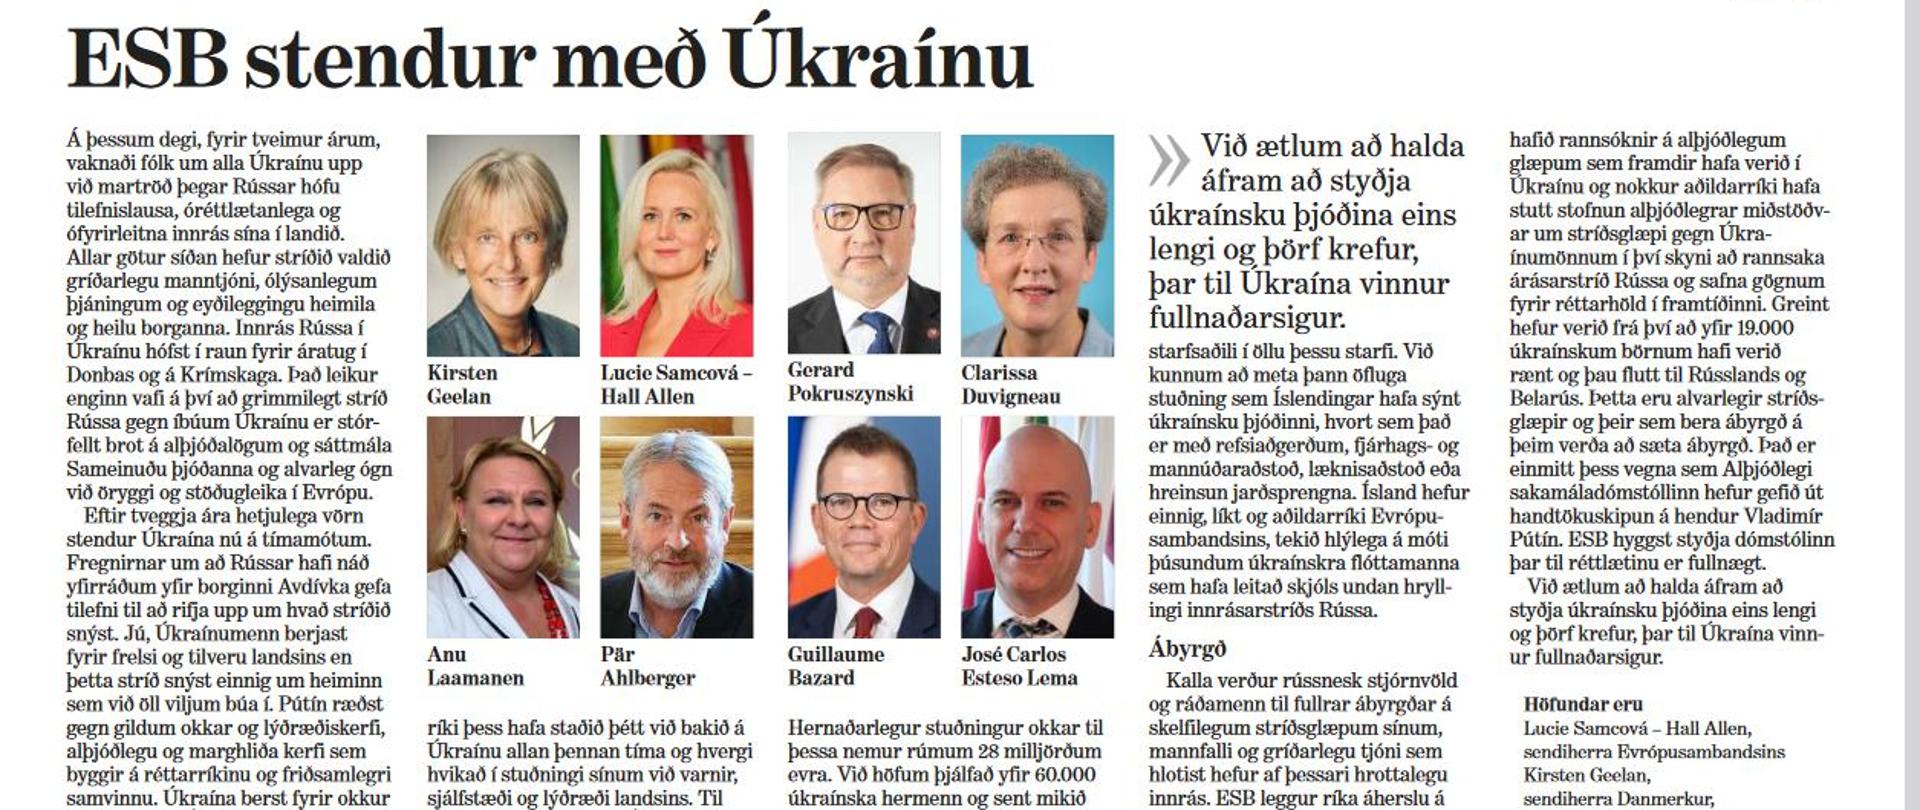 The EU Stands with Ukraine - Joint Op-Ed ESB stendur með Úkraínu